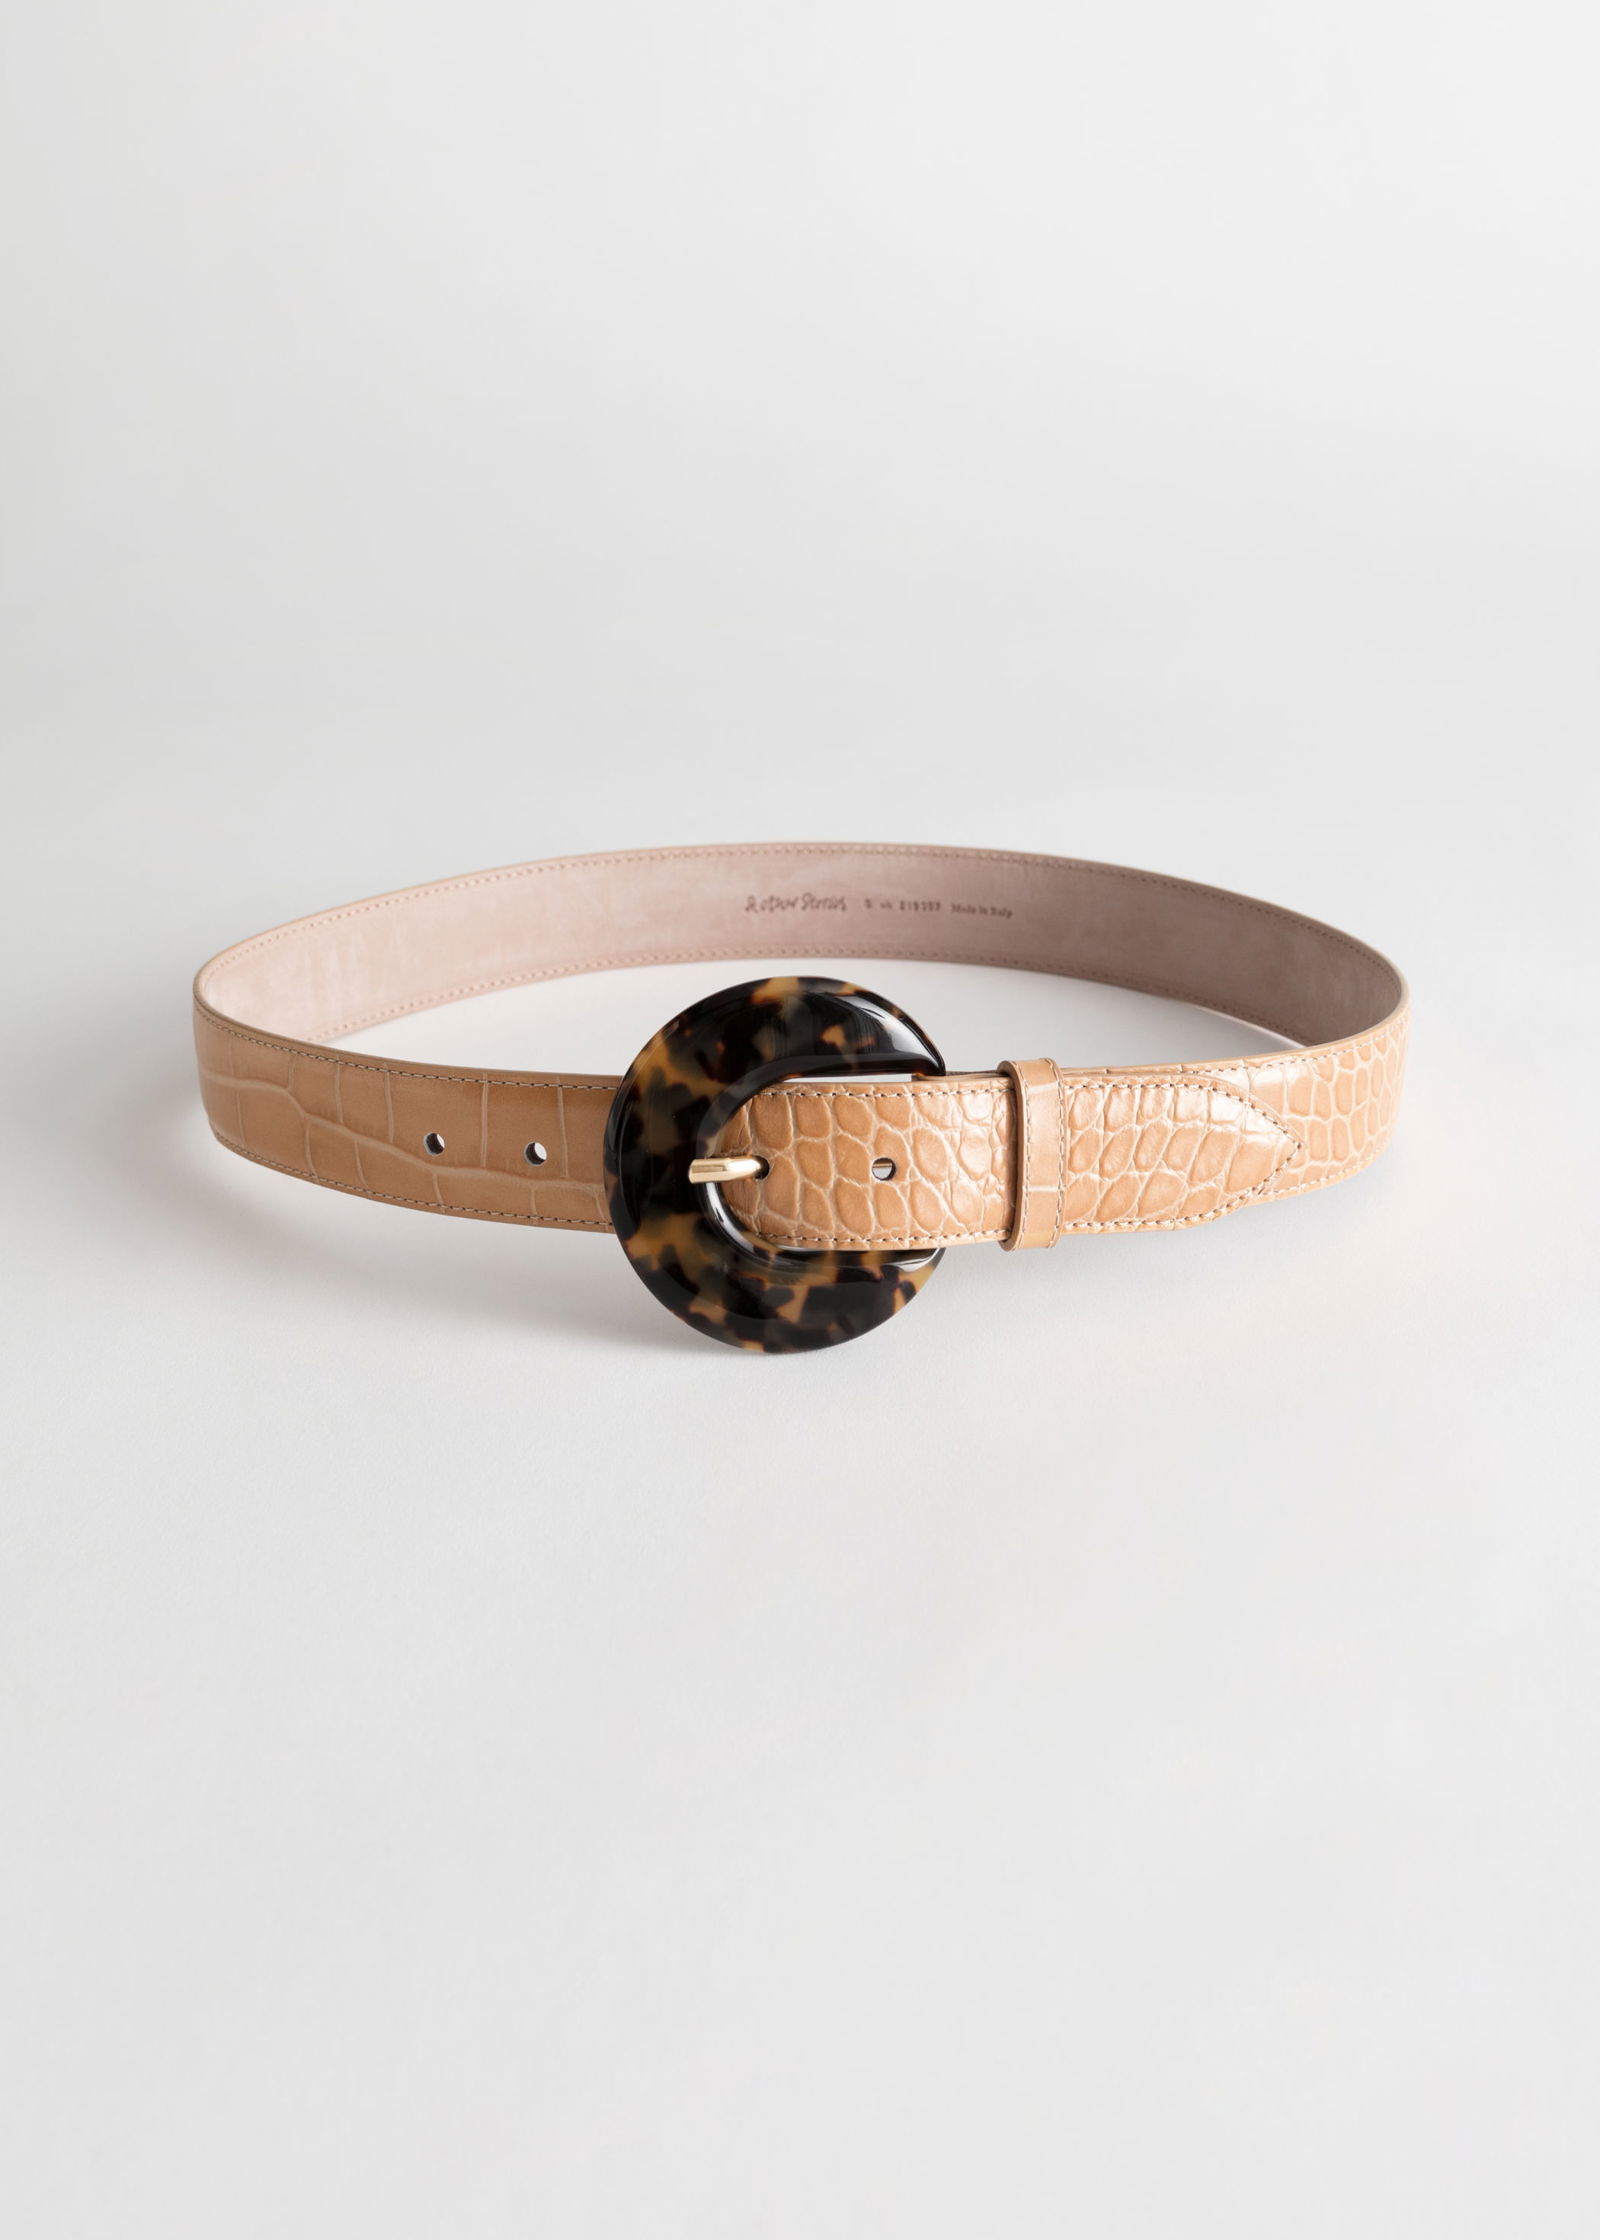 Croc leather round buckle waist belt